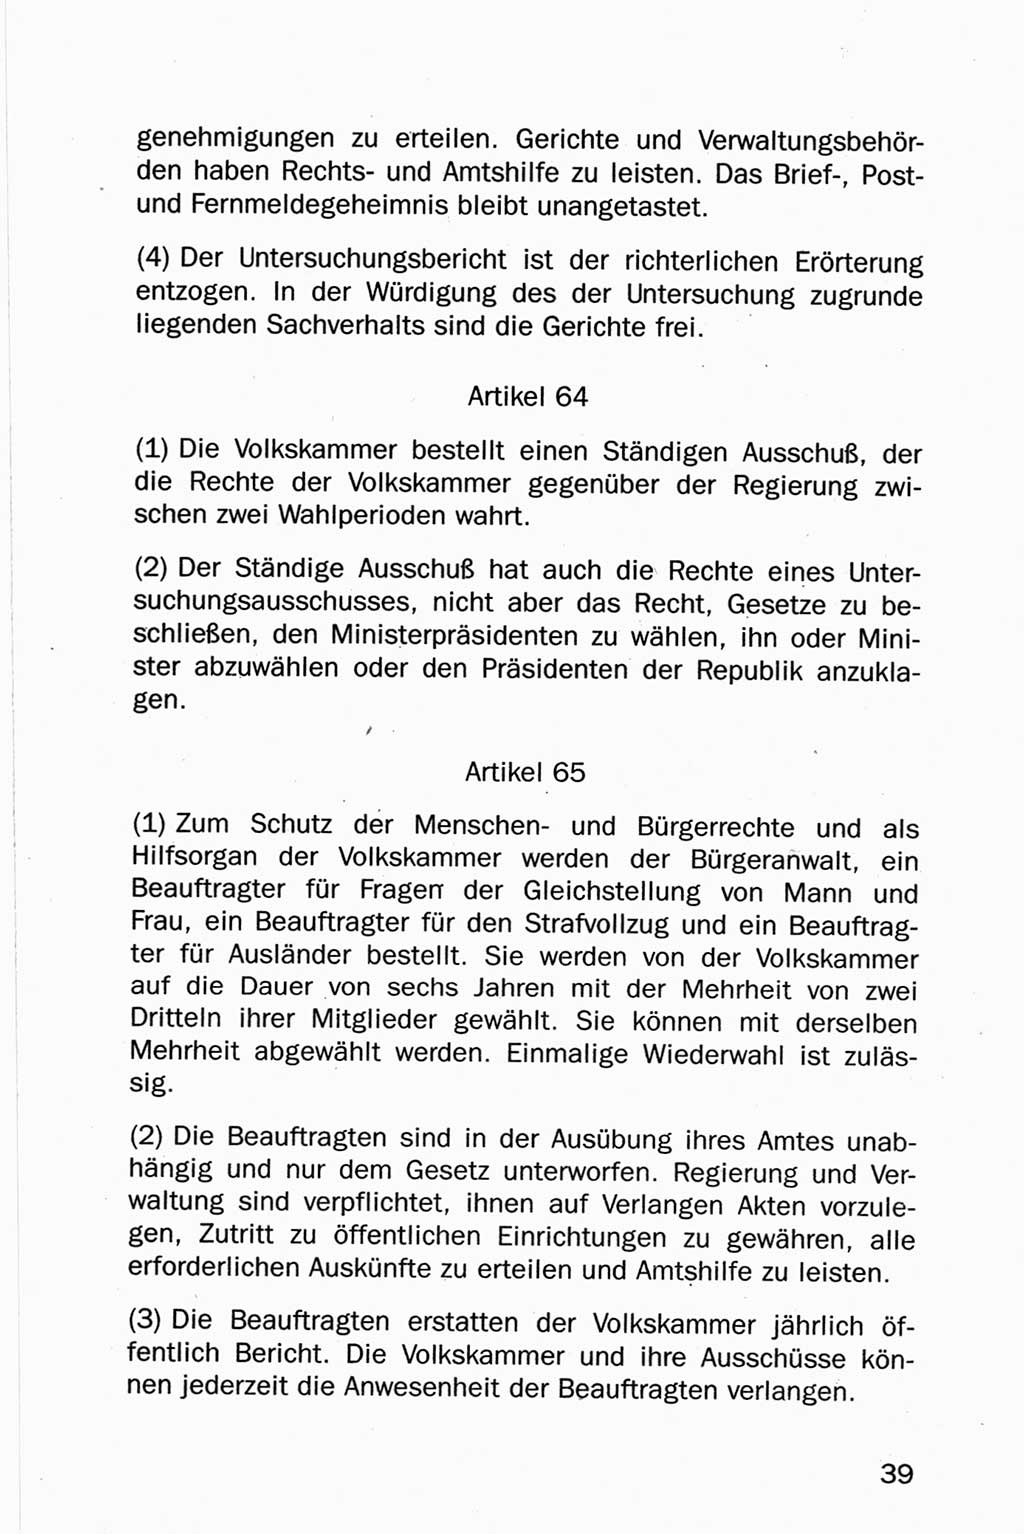 Entwurf Verfassung der Deutschen Demokratischen Republik (DDR), Arbeitsgruppe "Neue Verfassung der DDR" des Runden Tisches, Berlin 1990, Seite 39 (Entw. Verf. DDR 1990, S. 39)